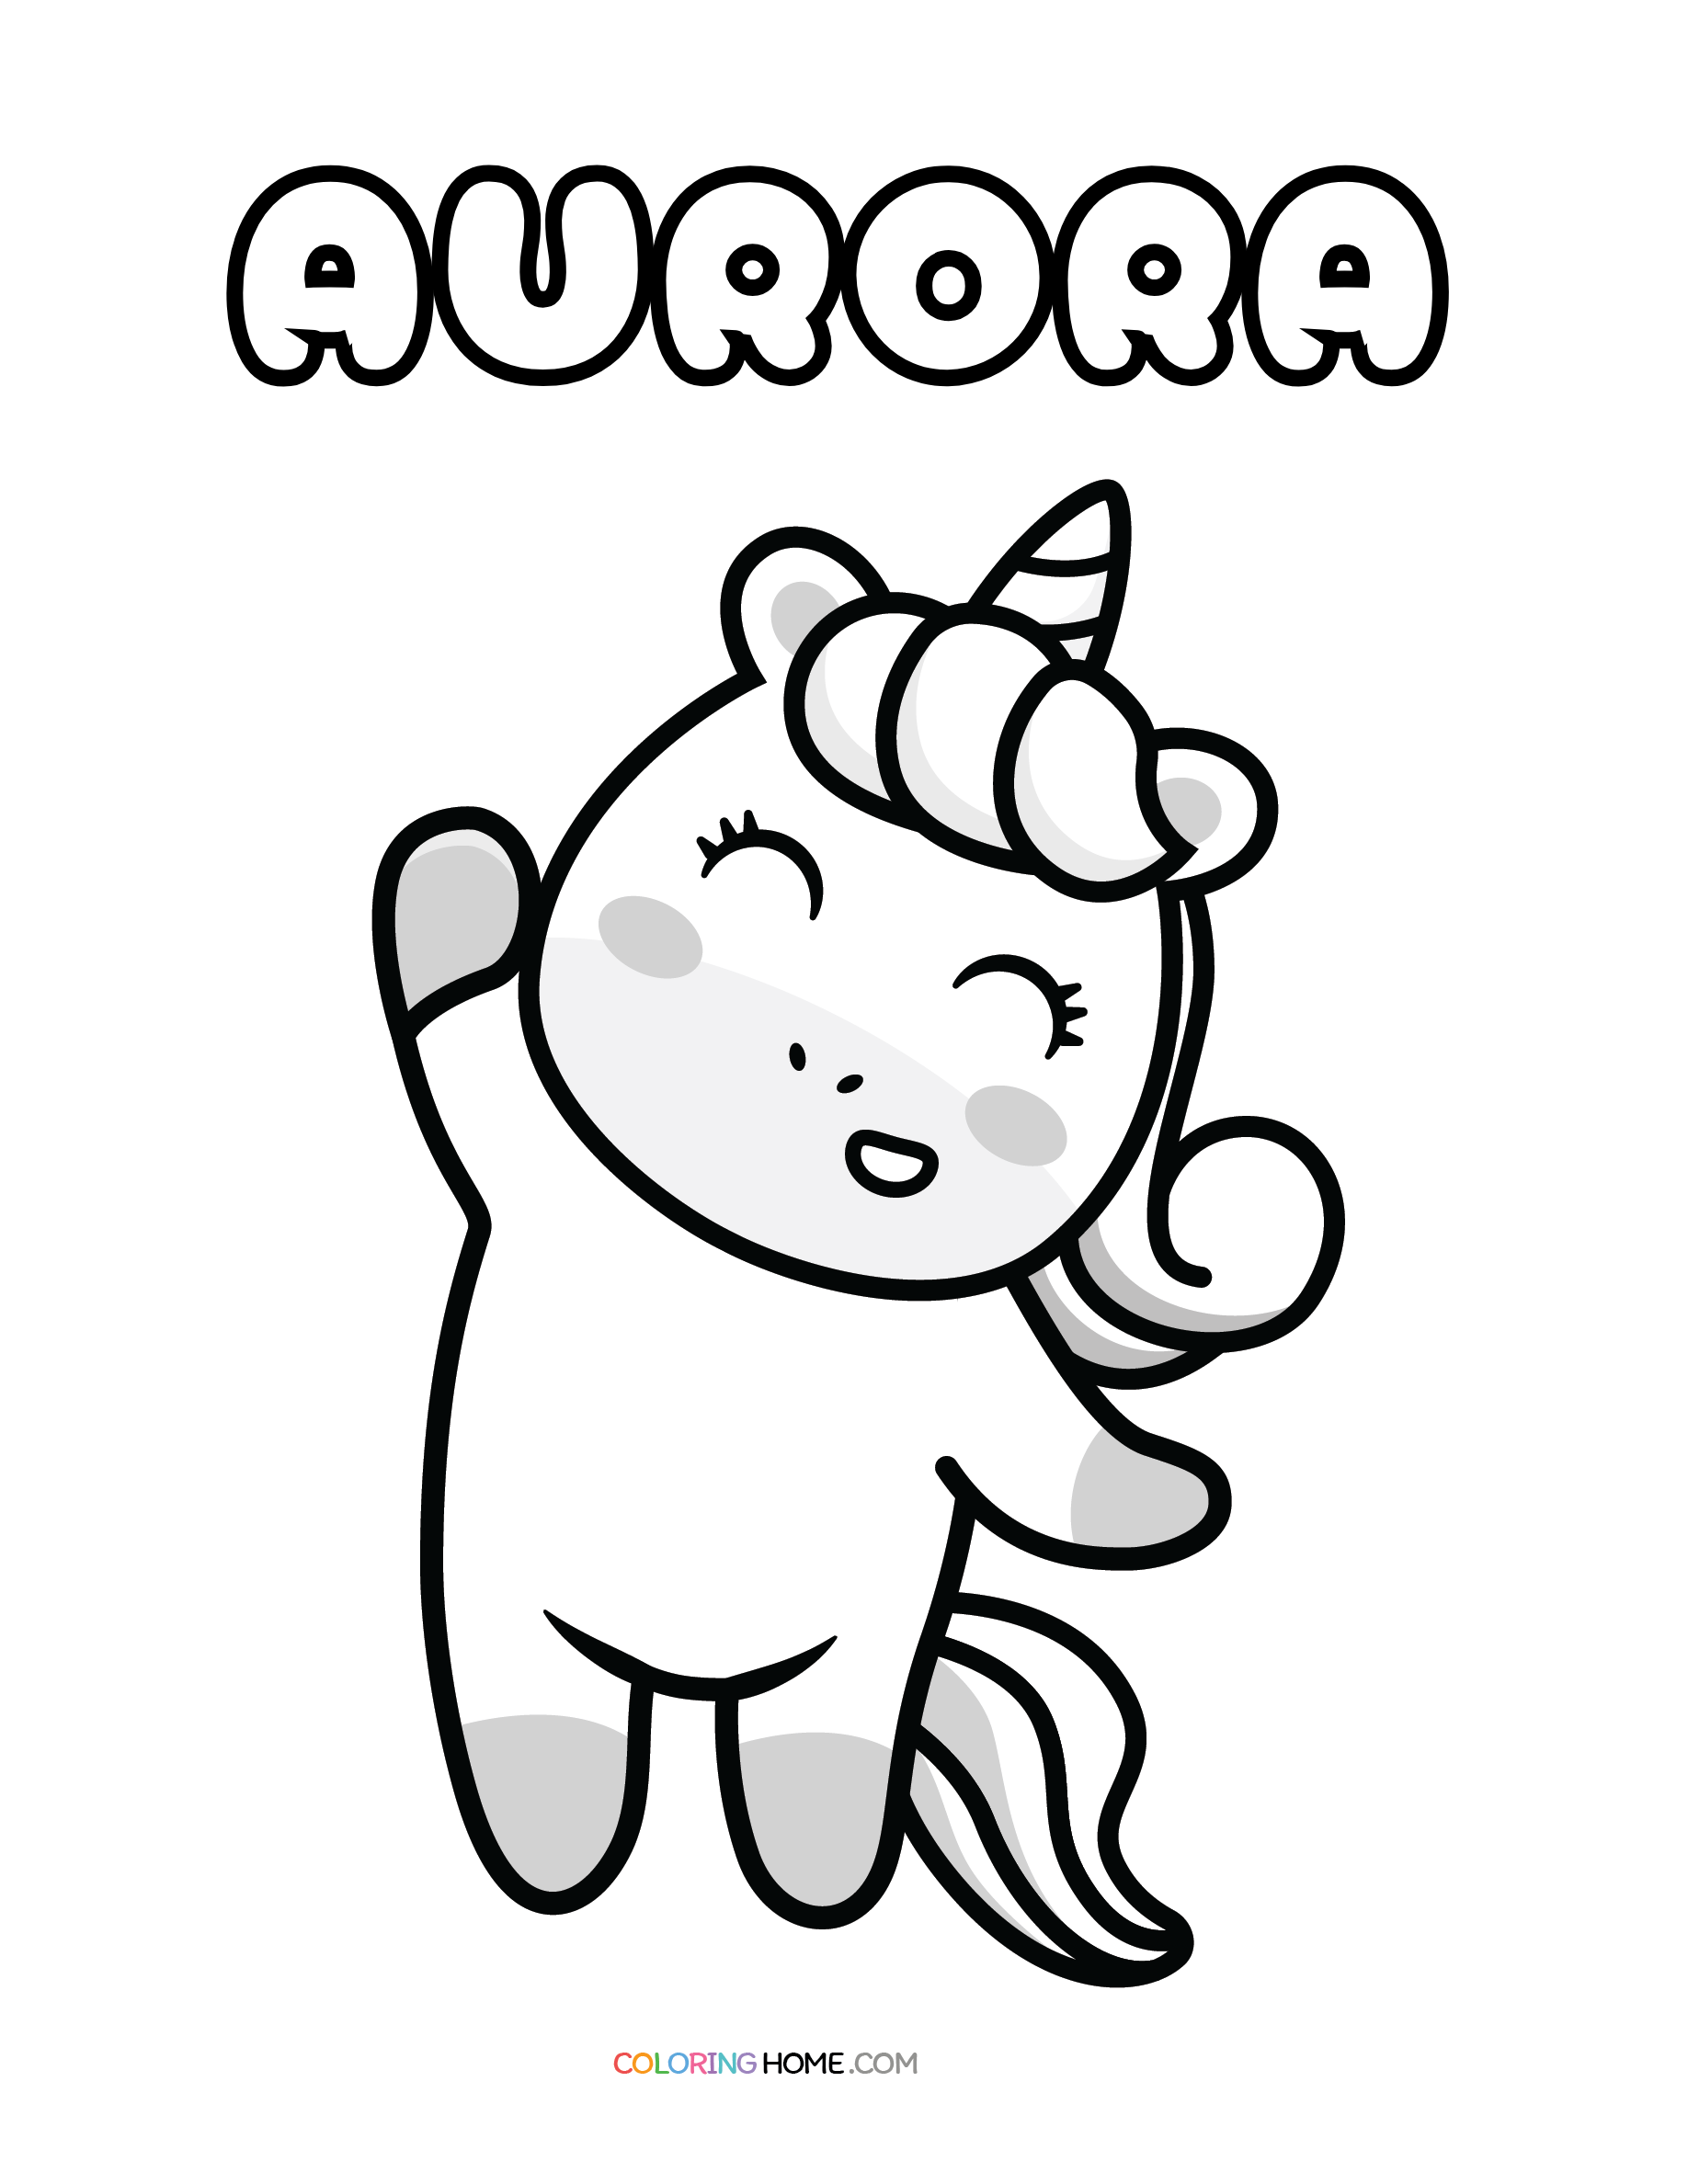 Aurora unicorn coloring page